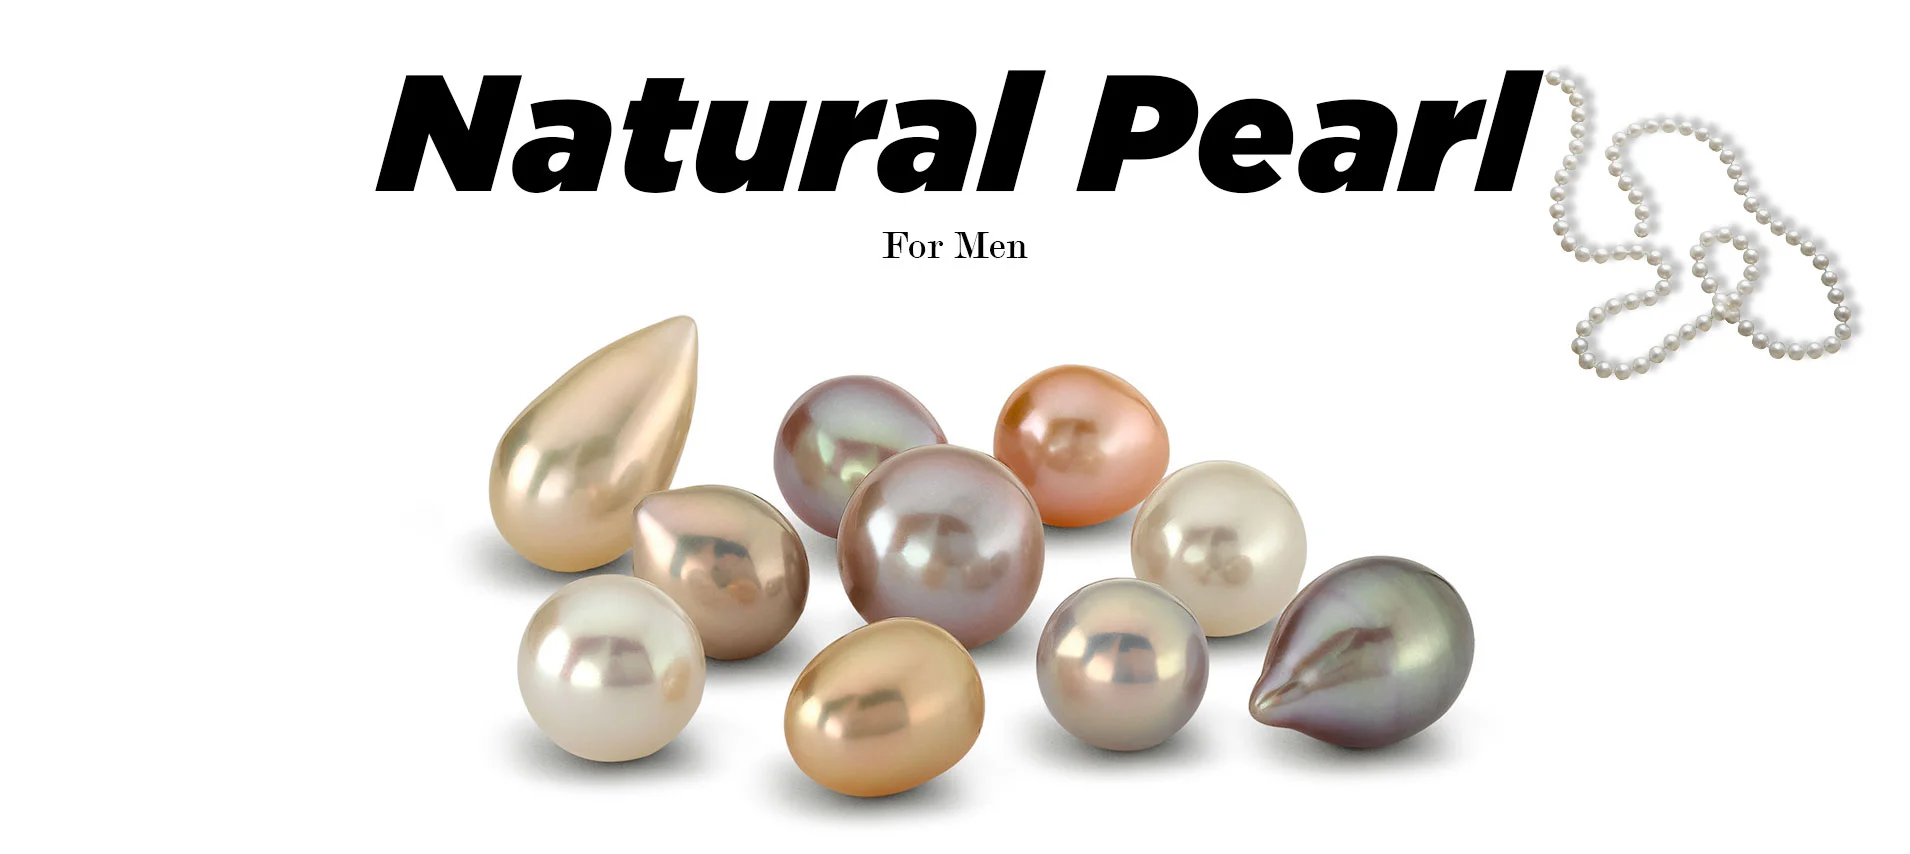 Natural Pearl Price In Pakistan